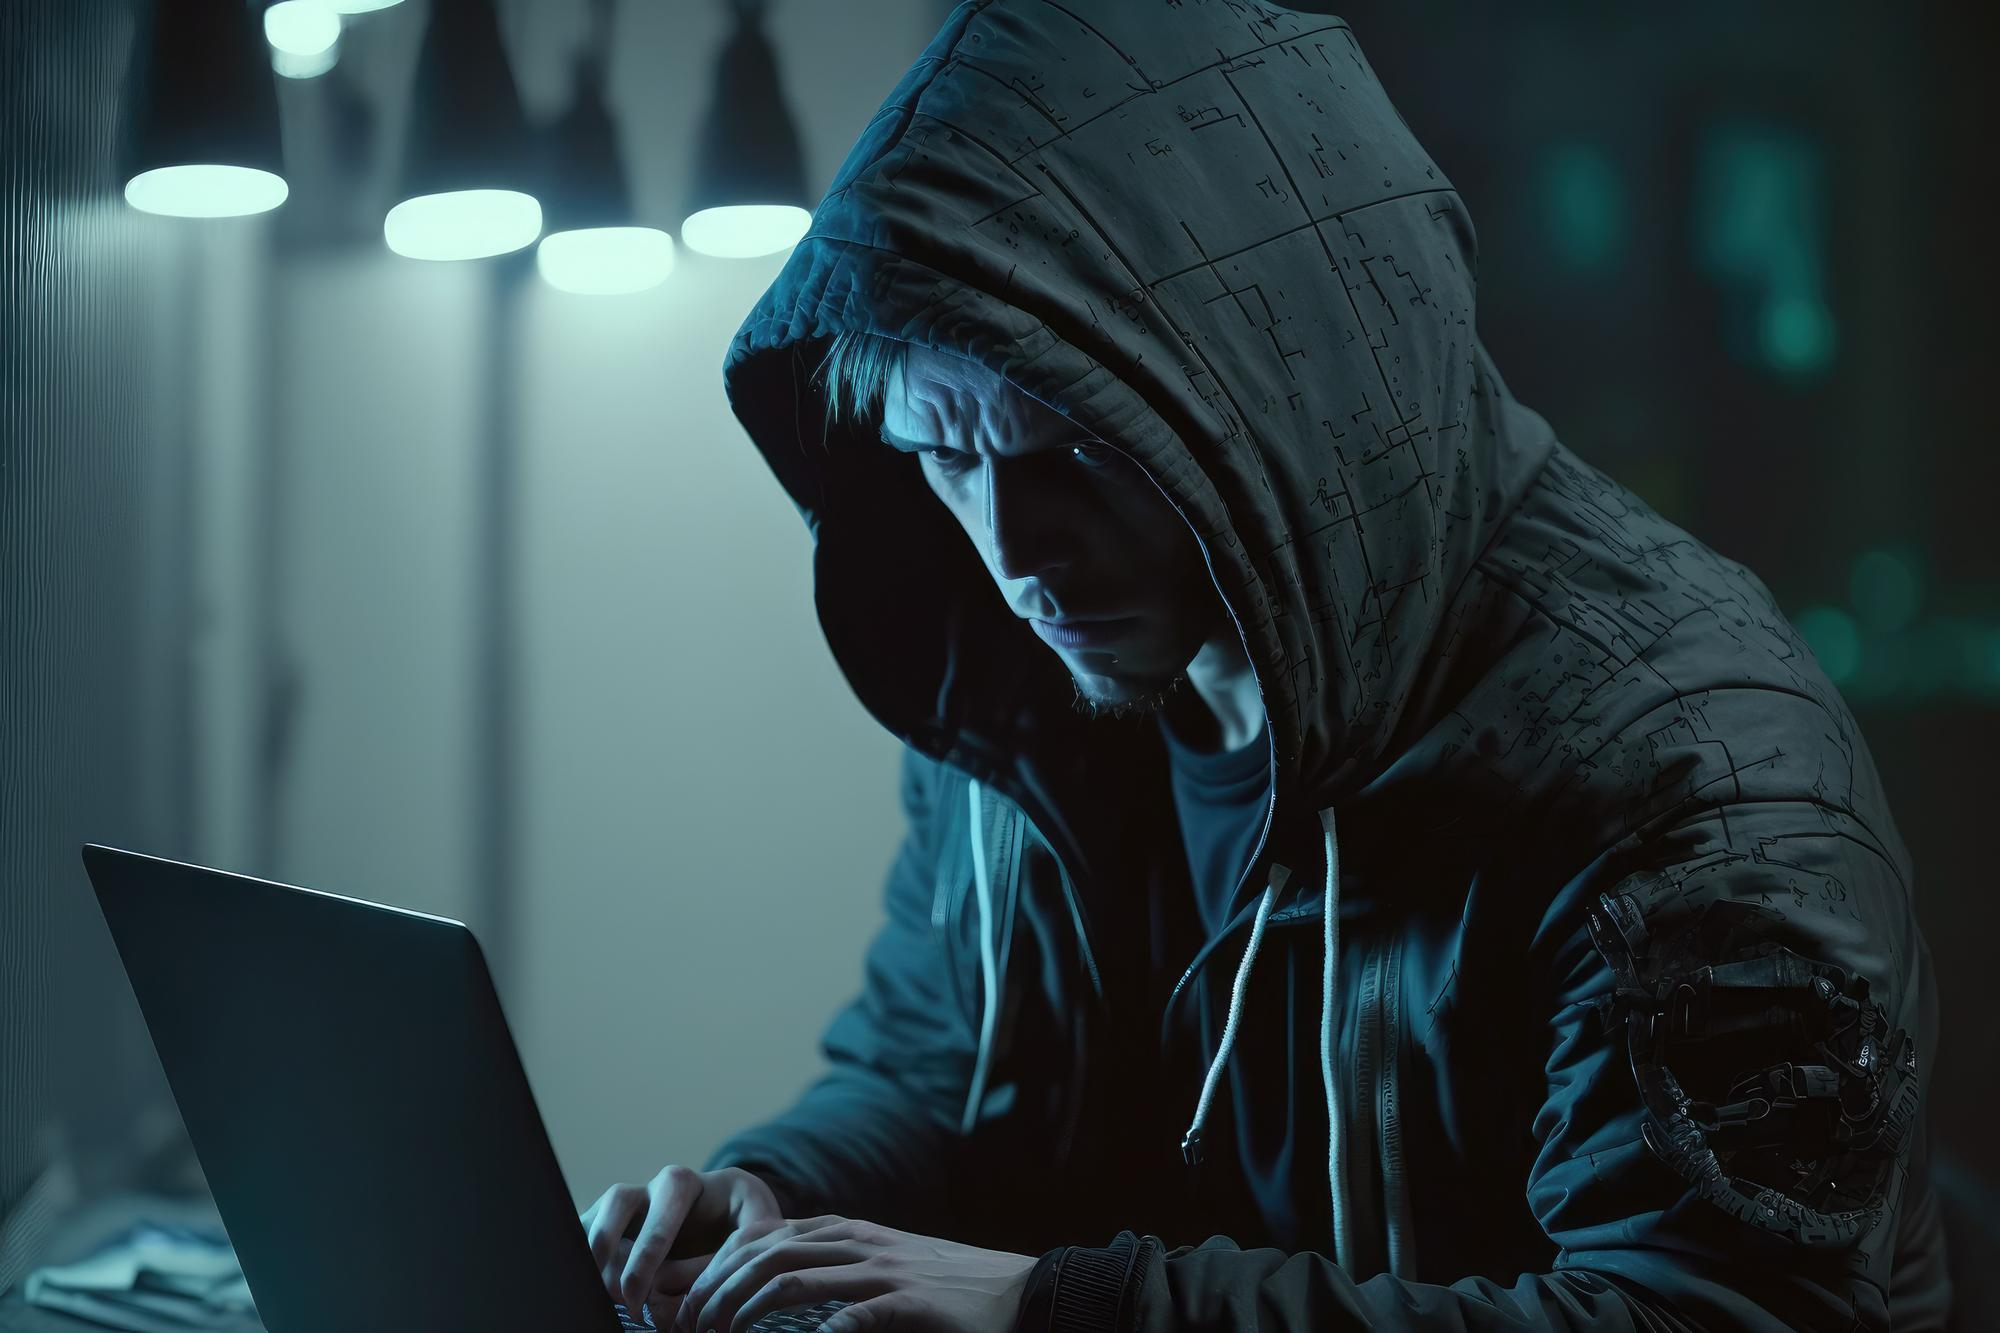 Haker z grozą patrzy na komputer.